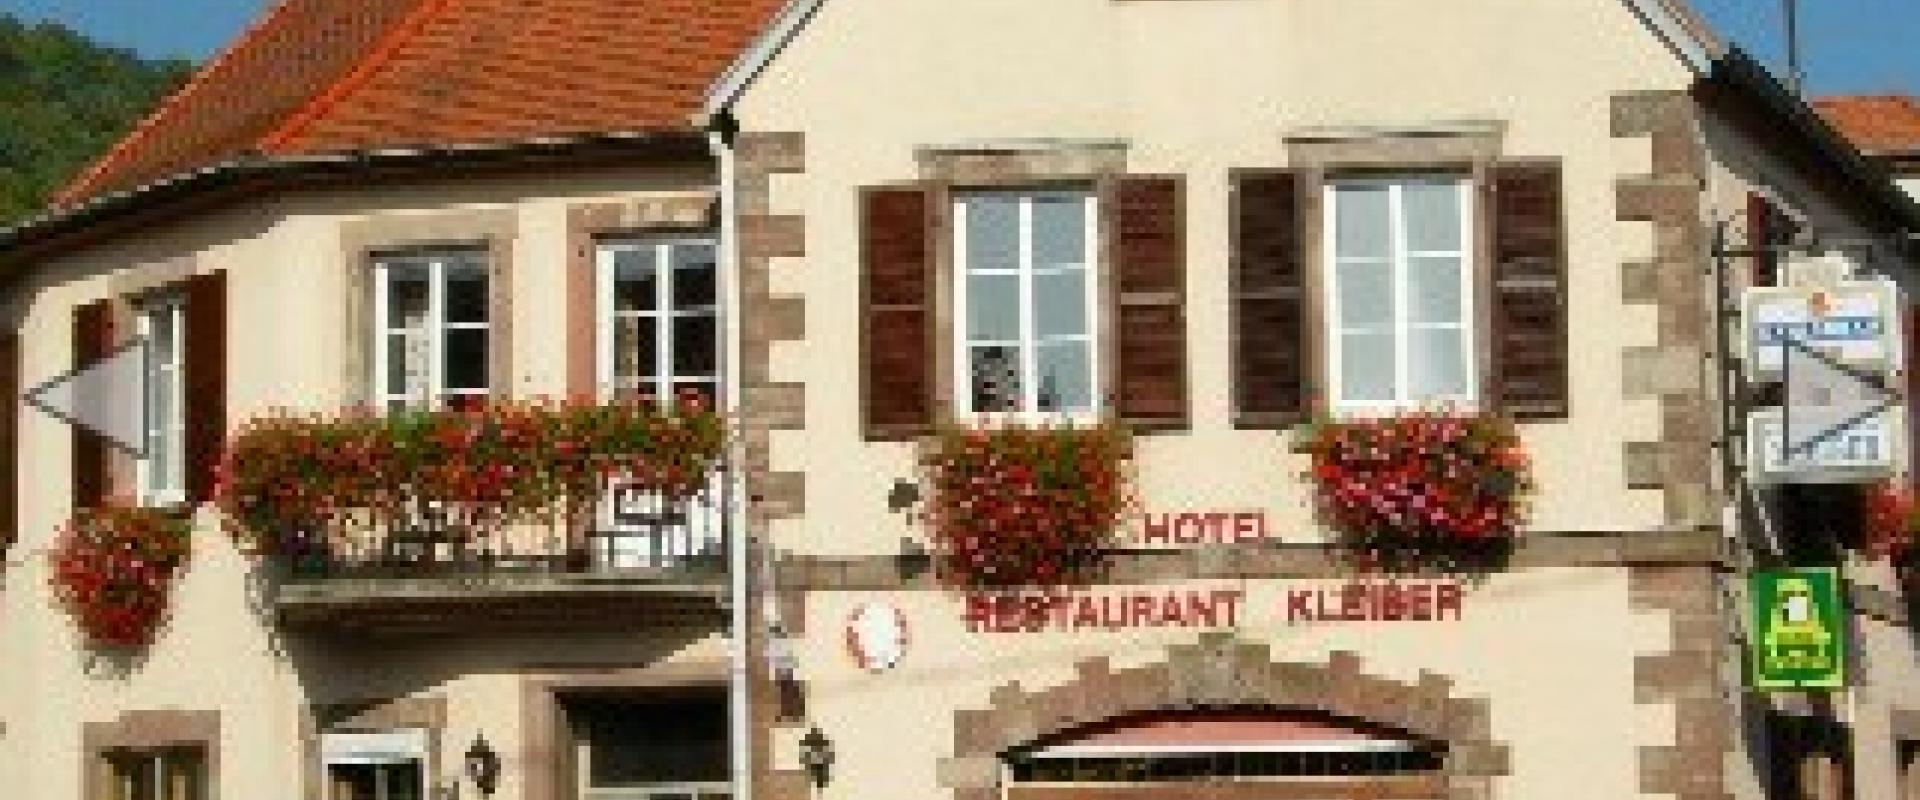 15958 Motorrad Hotel Kleiber im Elsass/Lothringen.jpg